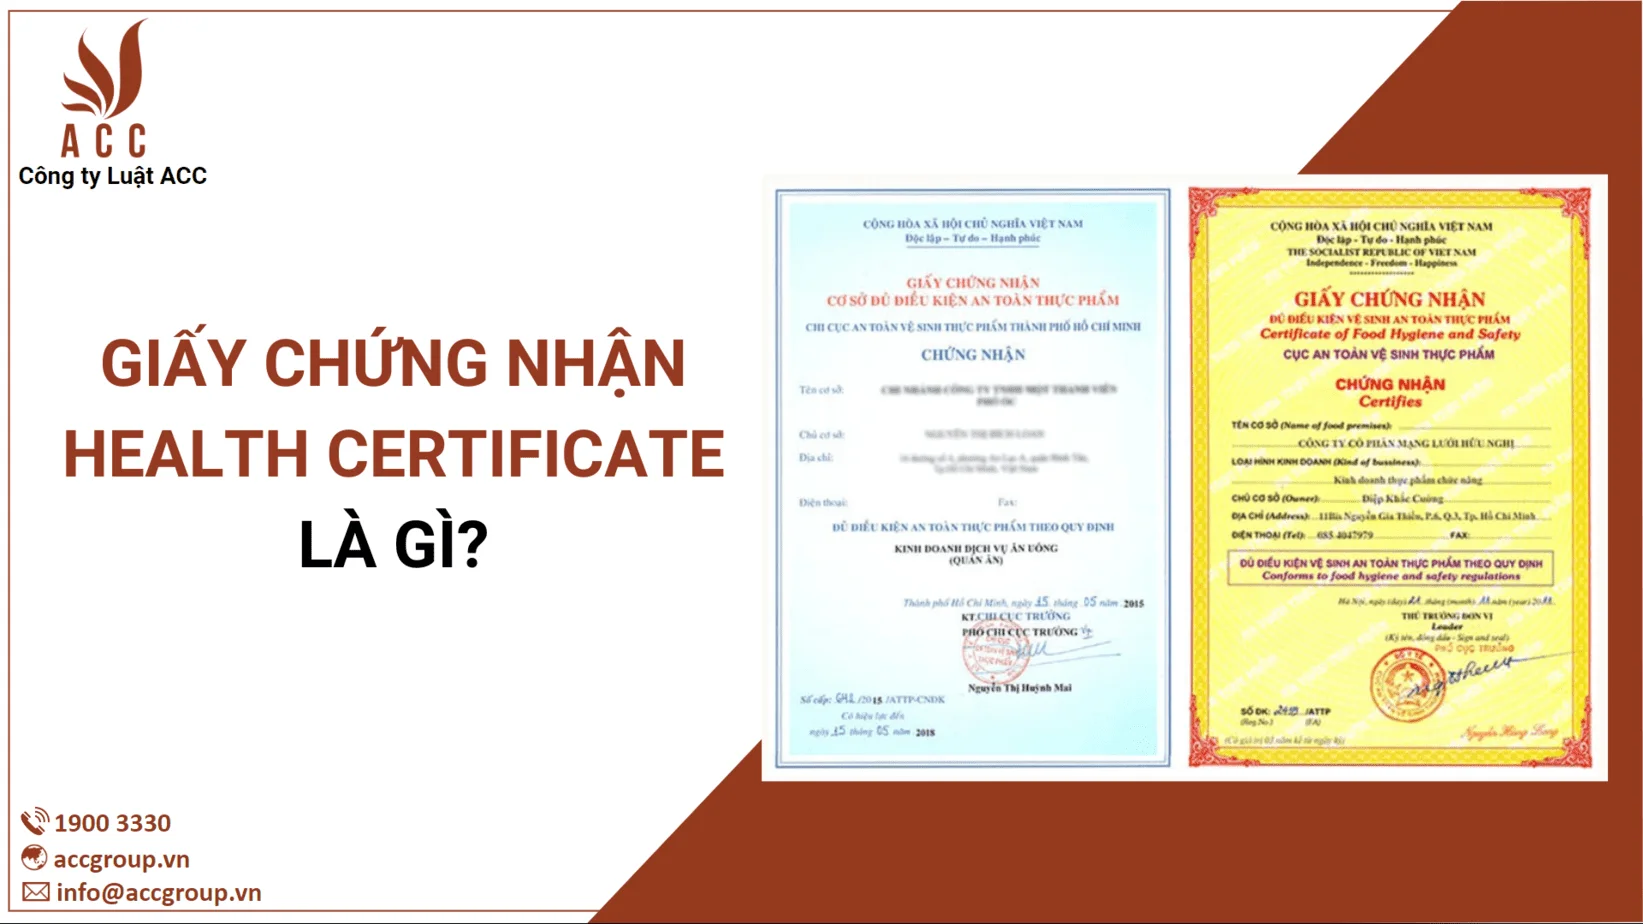 Giấy chứng nhận Health Certificate là gì?